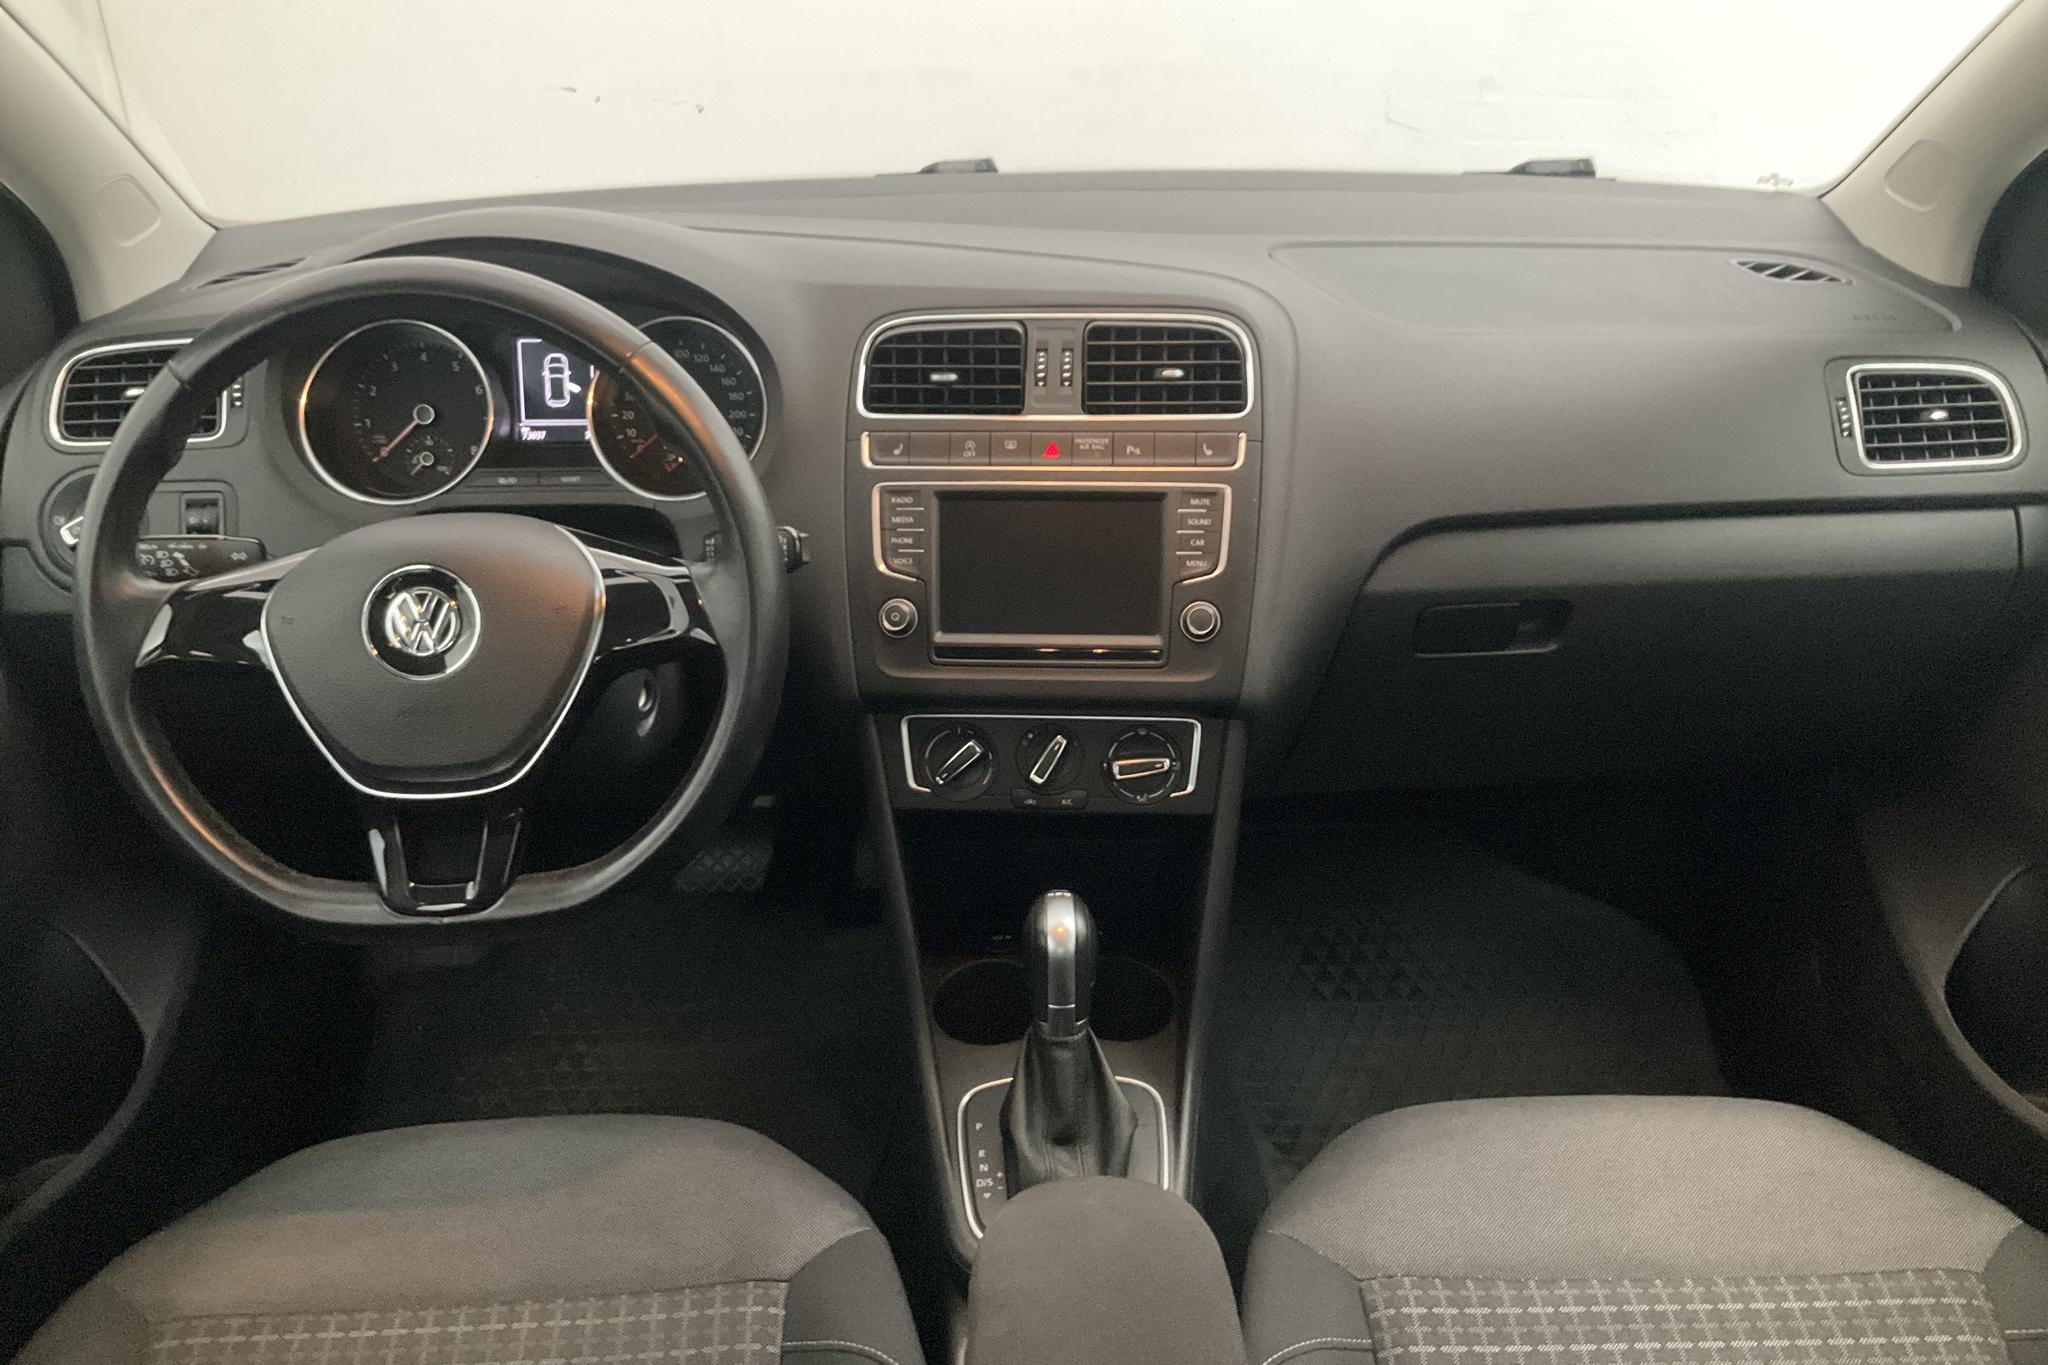 VW Polo 1.2 TSI 5dr (90hk) - 7 304 mil - Automat - svart - 2016